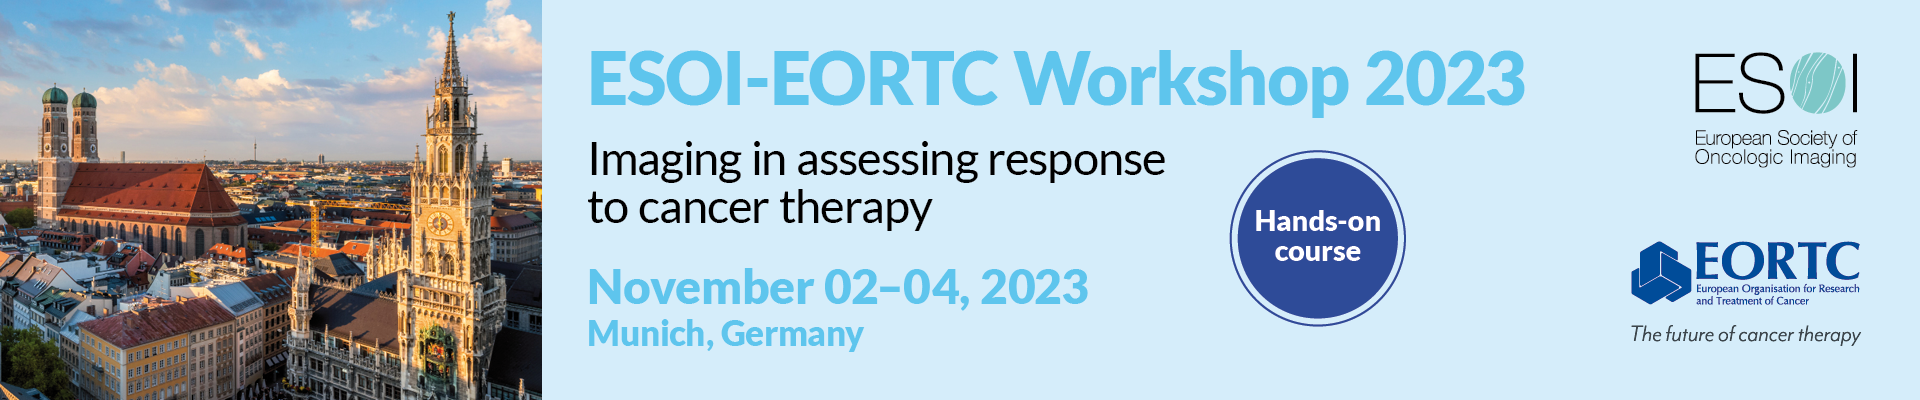 ESOI-EORTC Workshop 2023